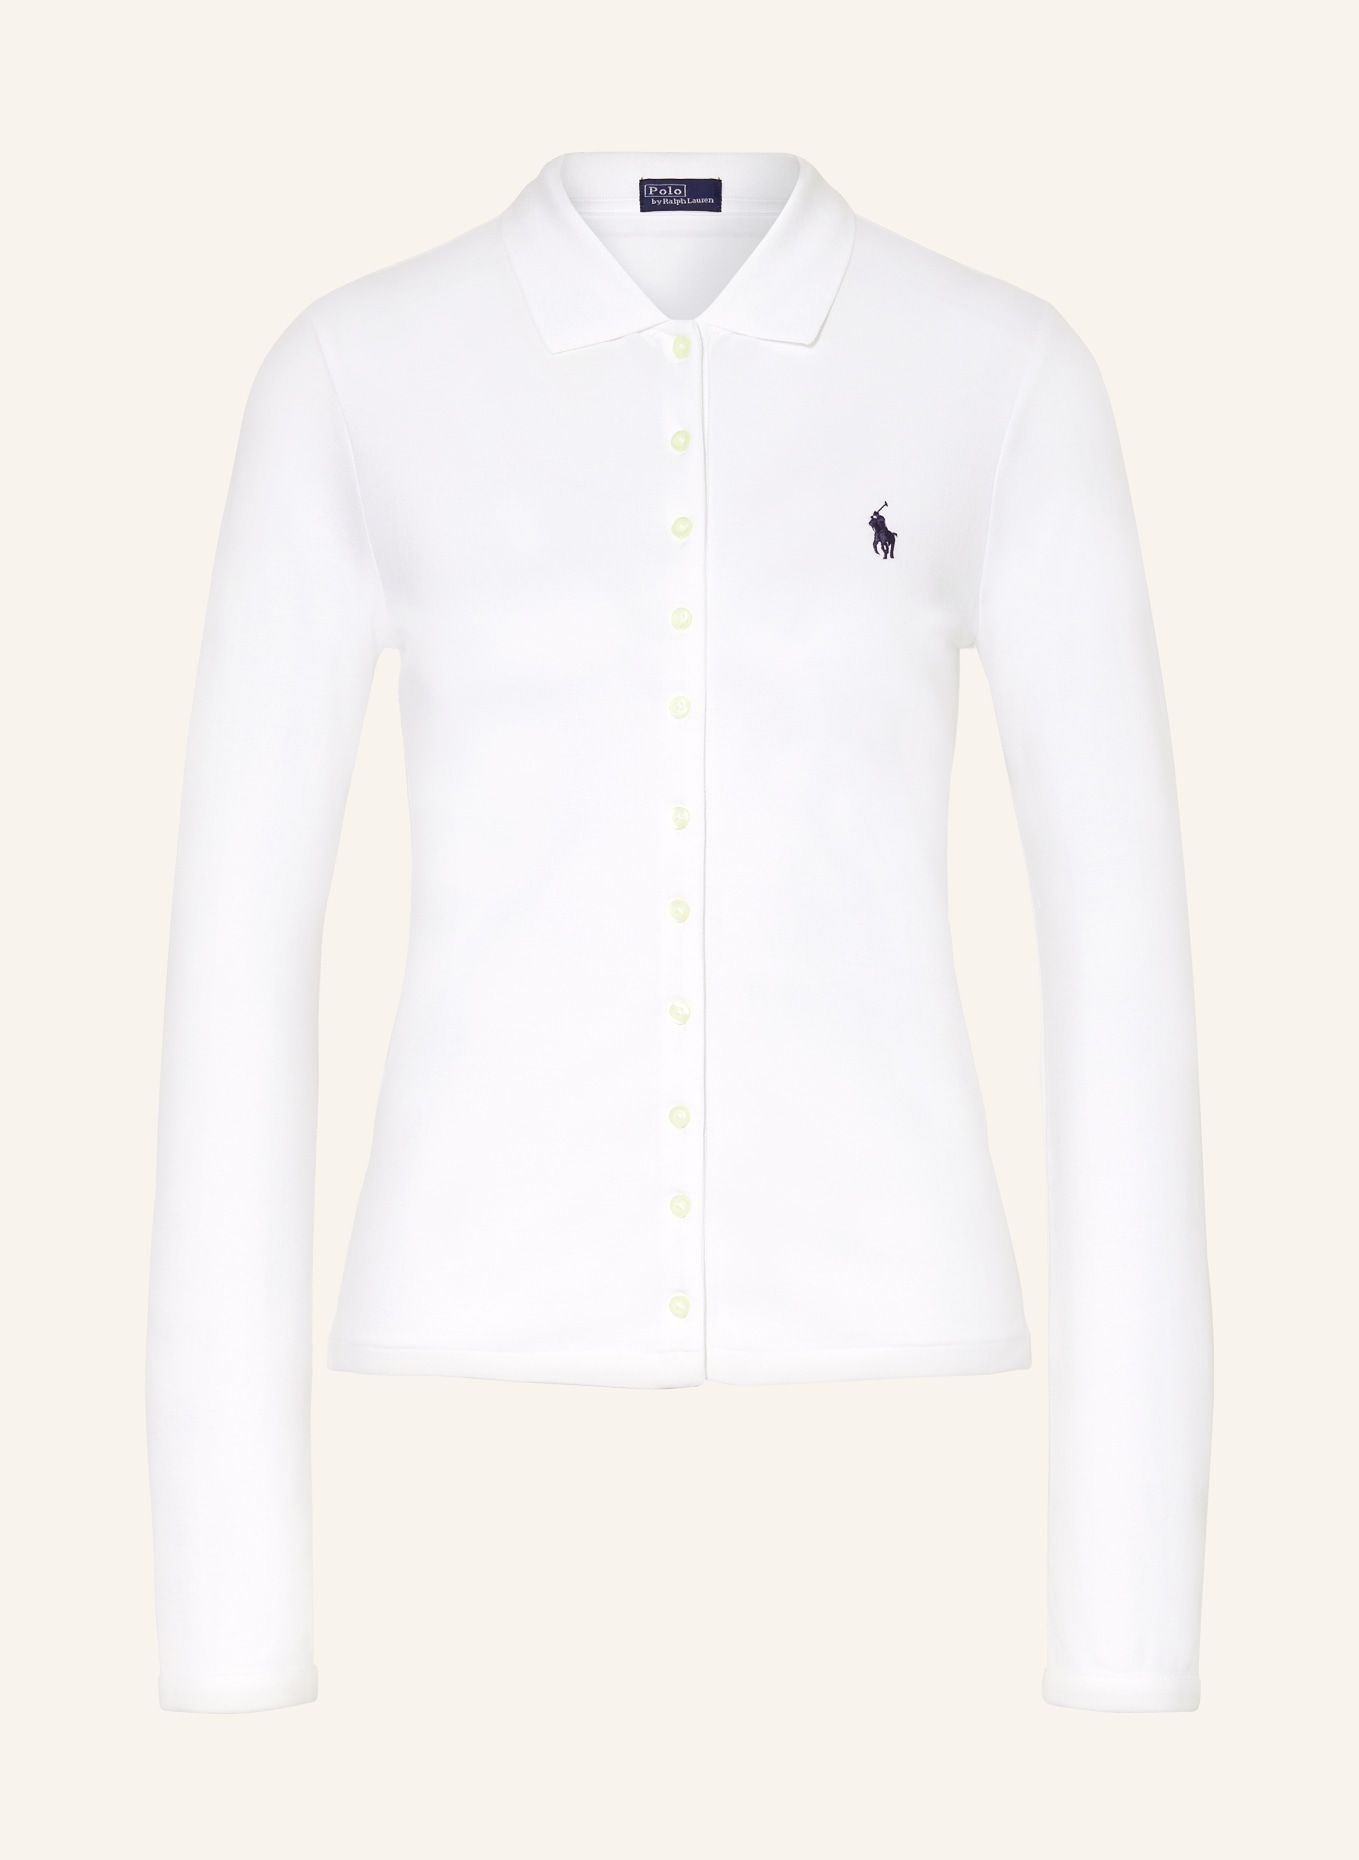 POLO RALPH LAUREN Piqué-Poloshirt, Farbe: WEISS (Bild 1)